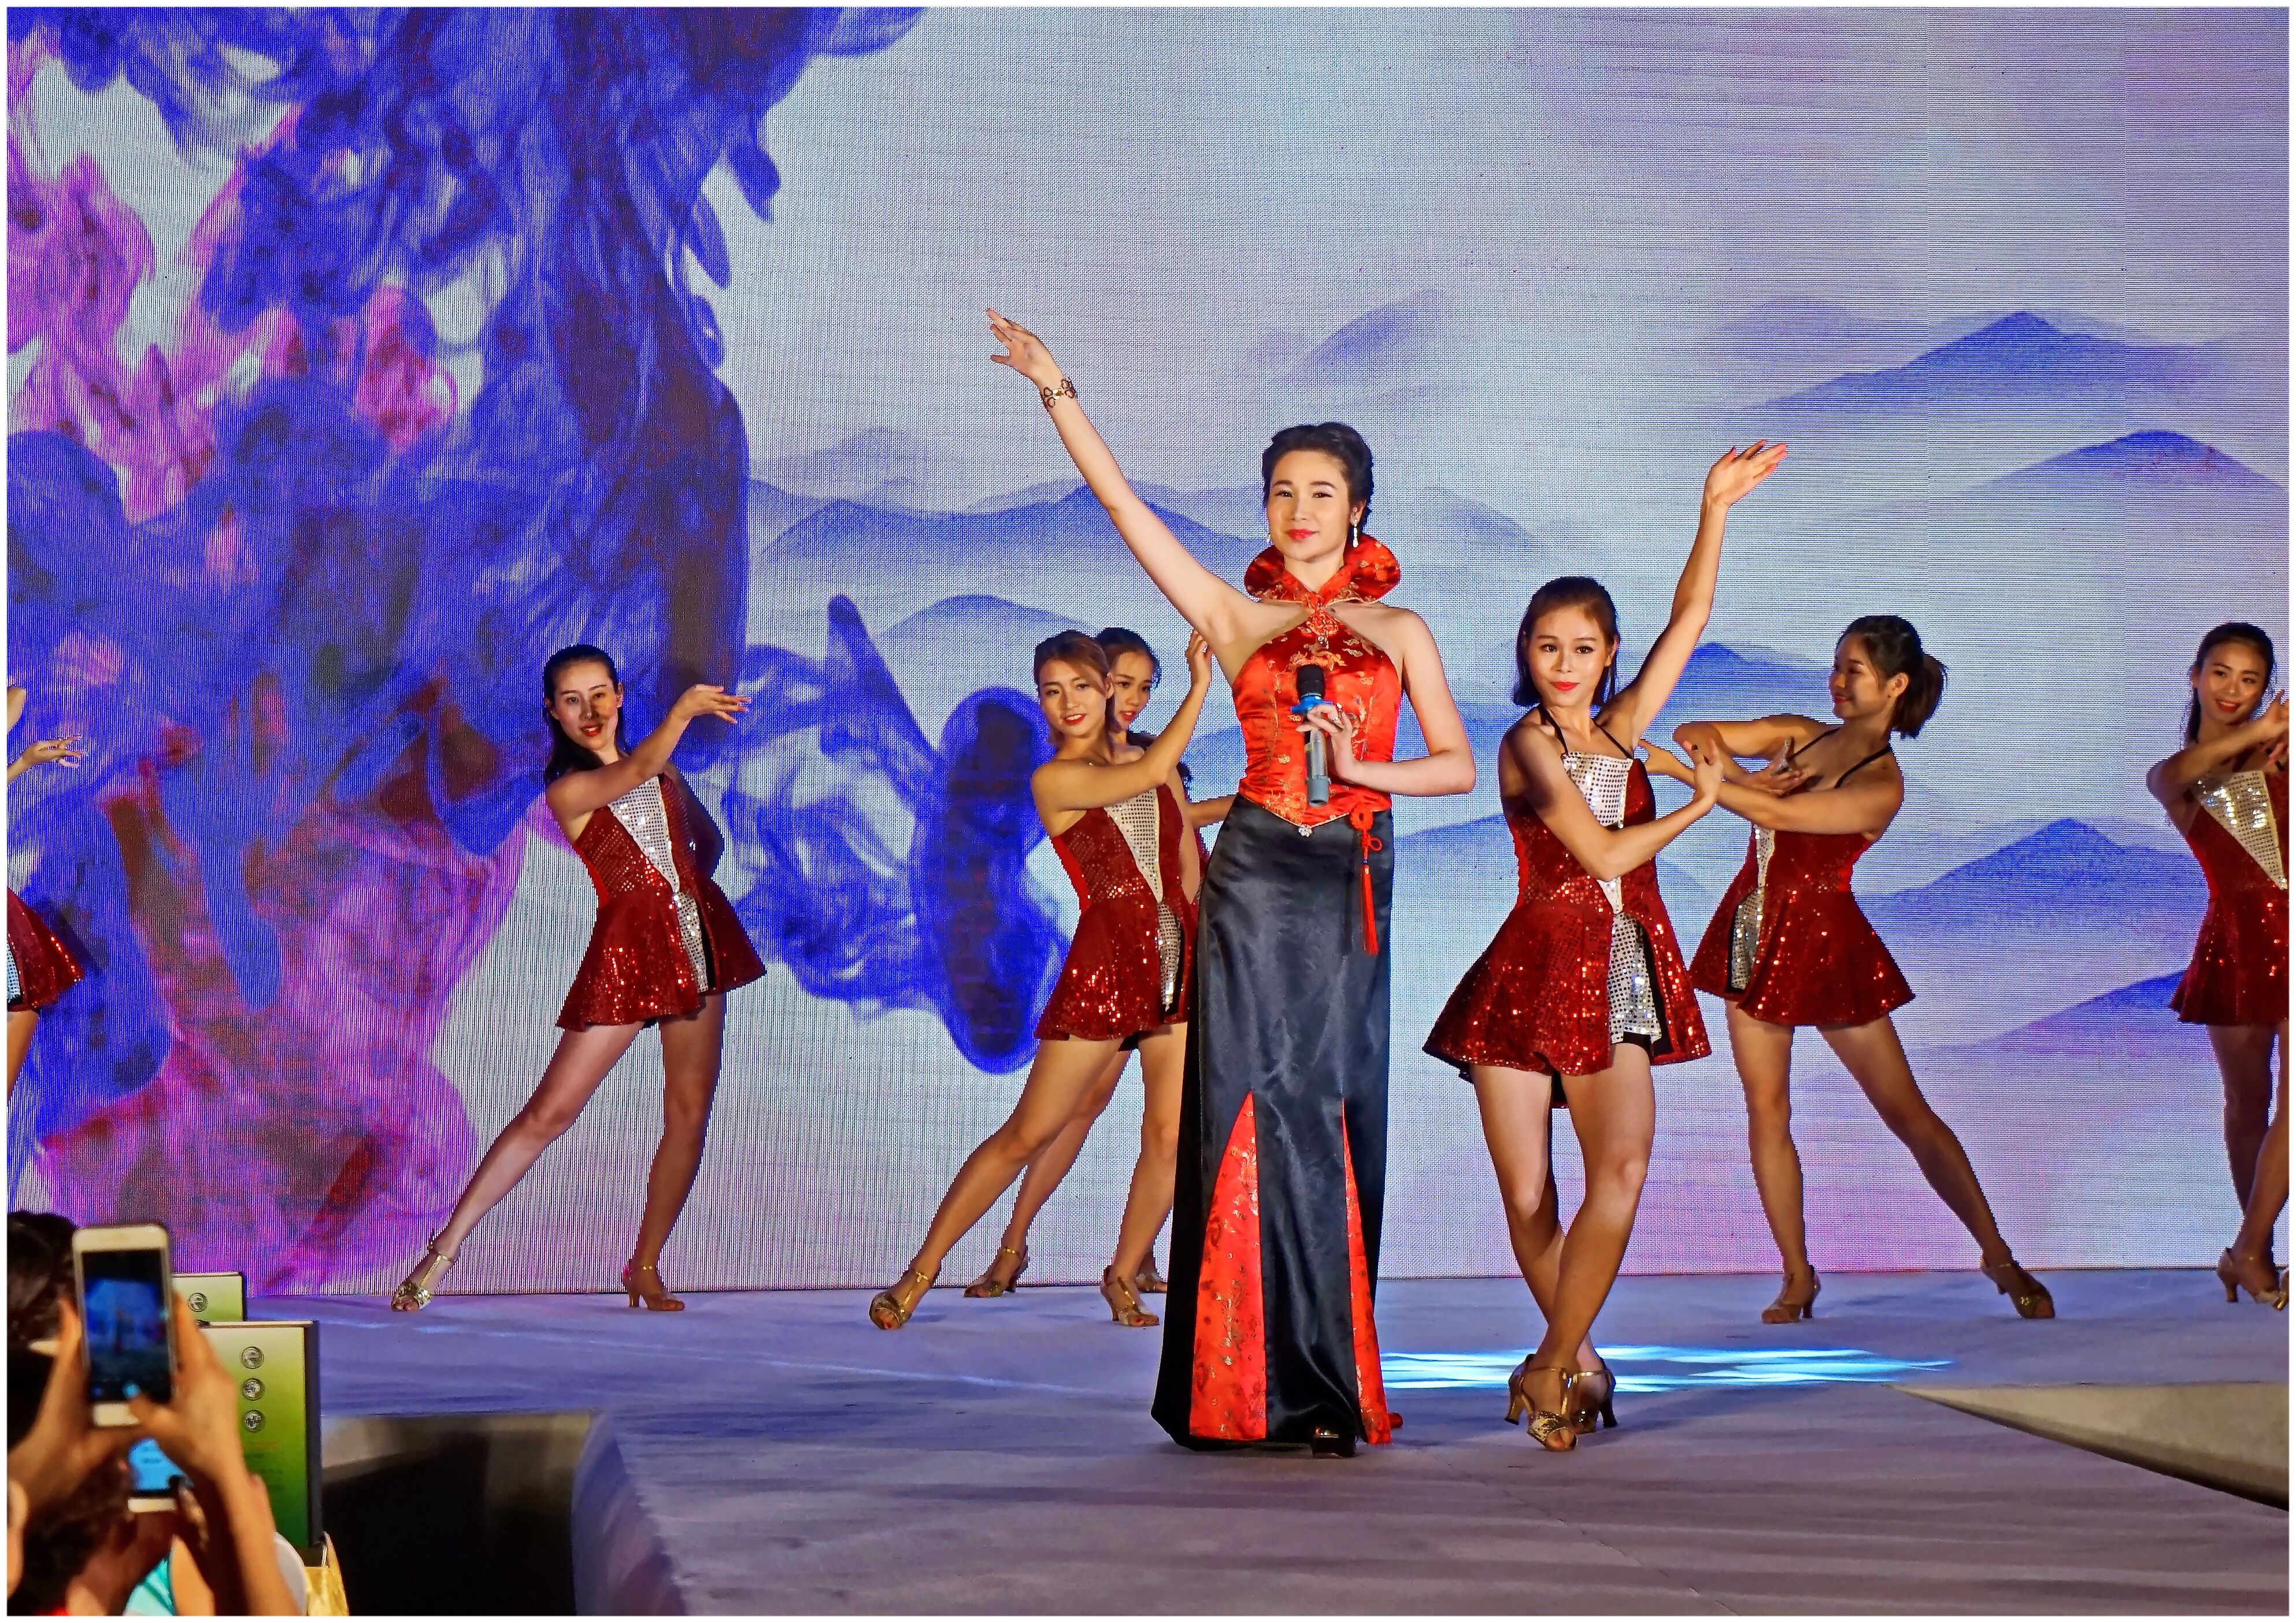 中国旗袍文化节《中华最美夫人》国际大赛全国新闻发布会 于佛山起航